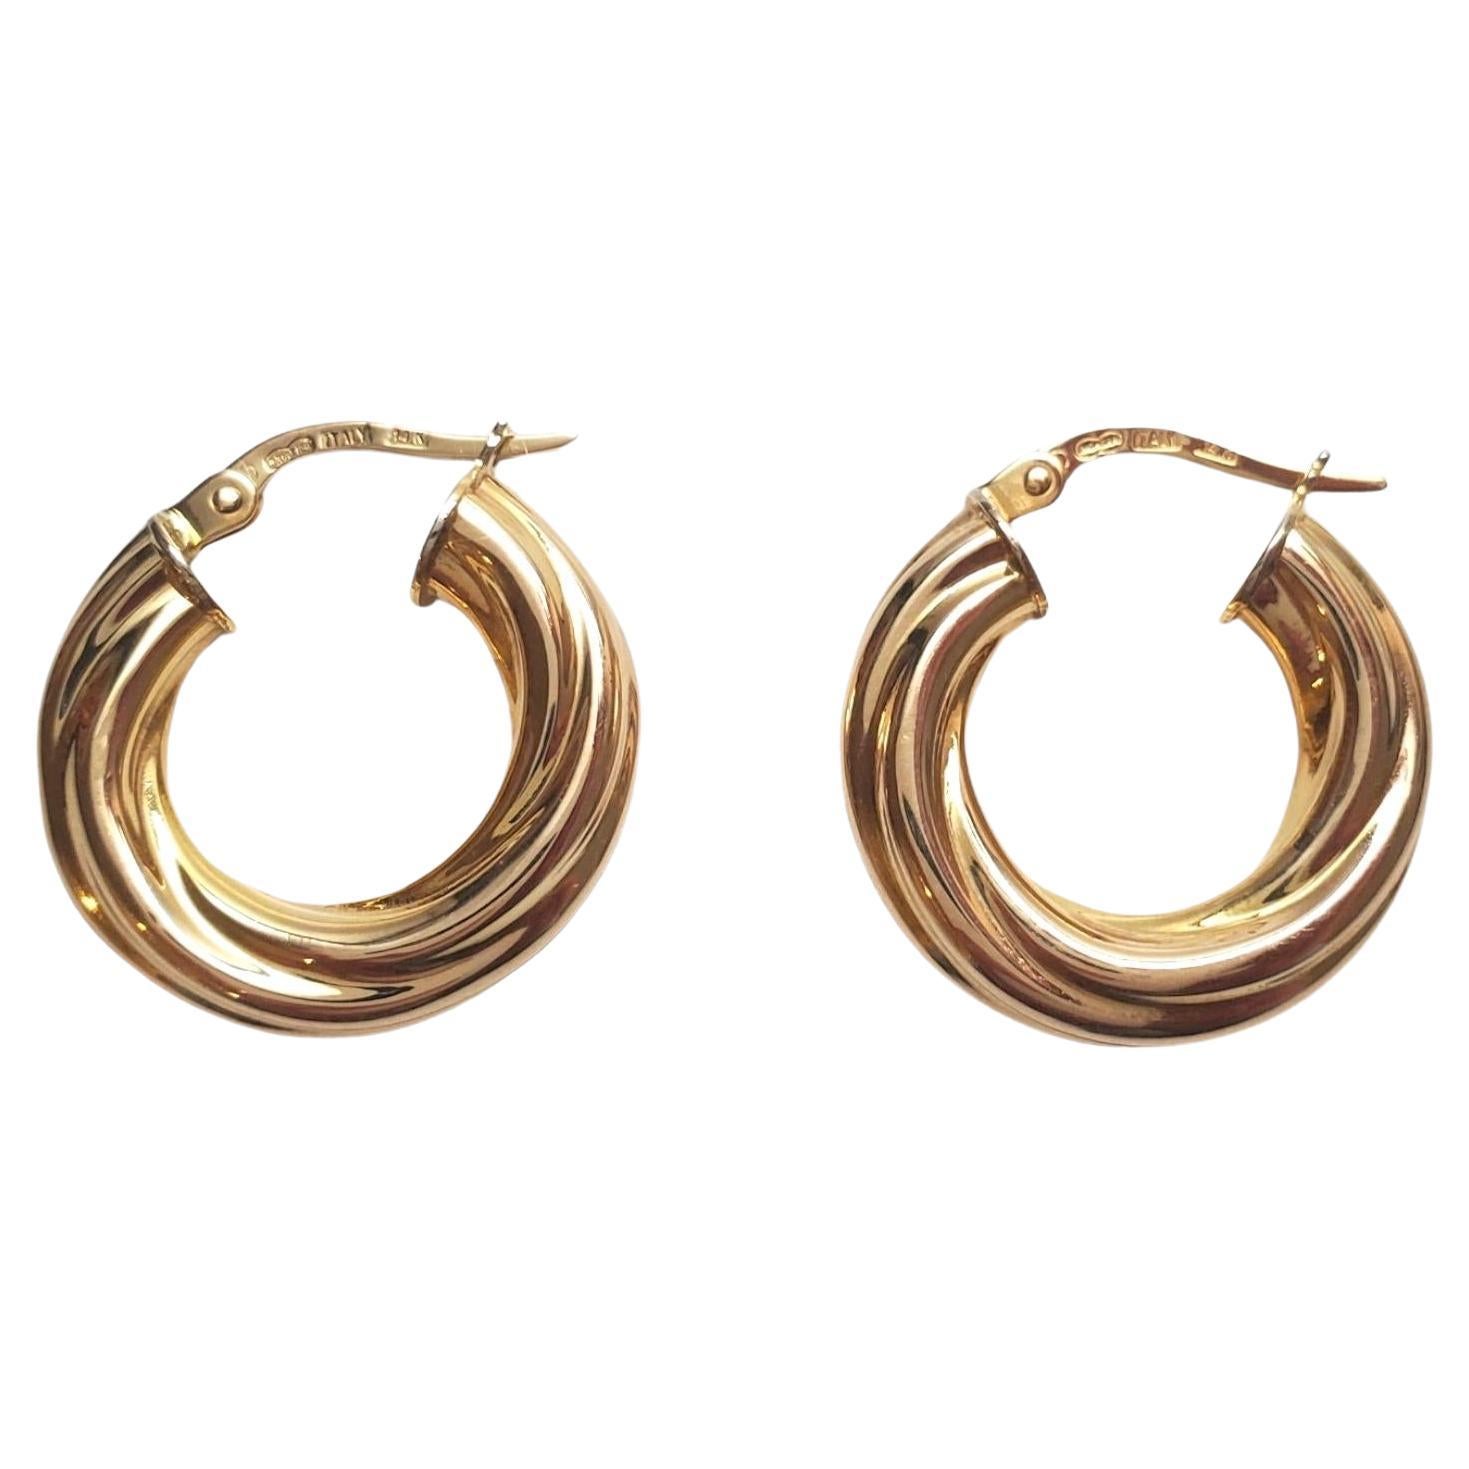 UnoAErre 14K Yellow Gold Twisted Hoop Earrings #17624